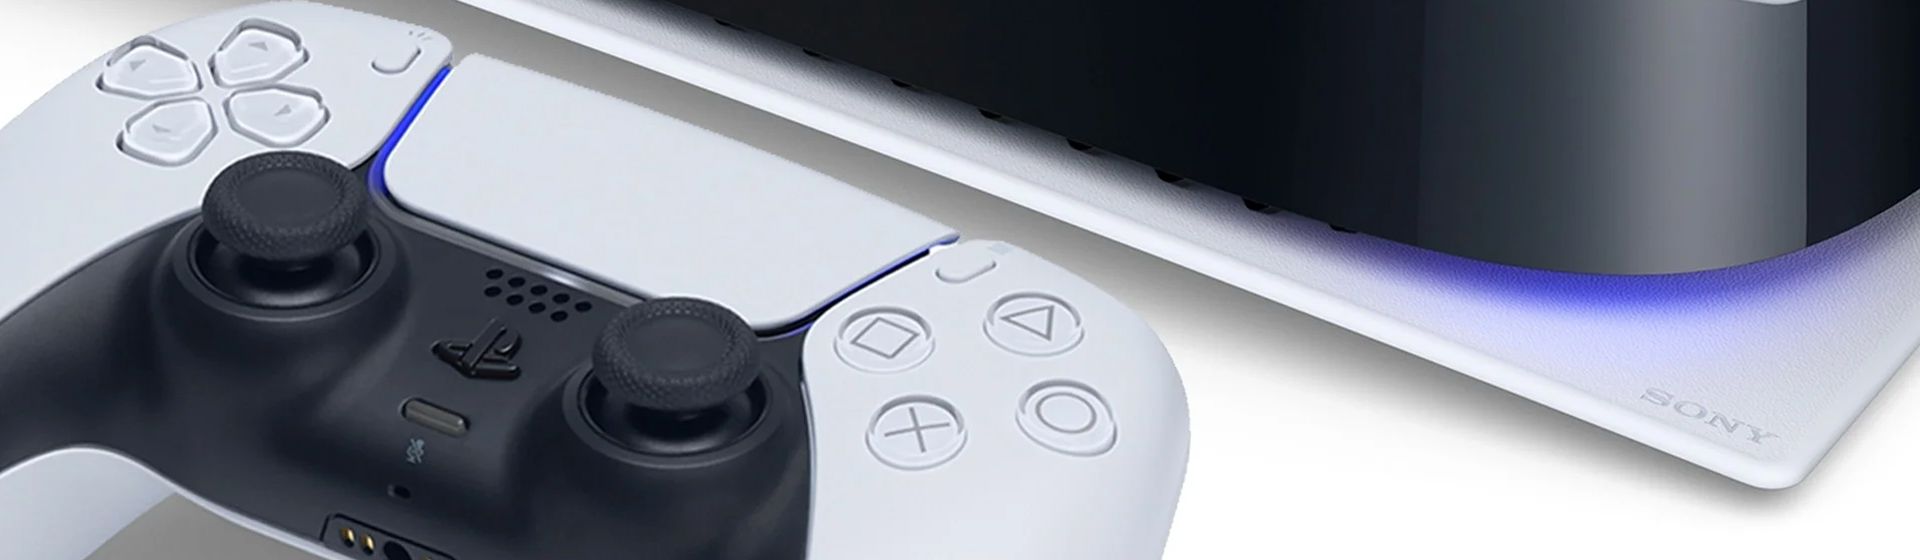 PS5 vs PS4 vs PS4 Pro: veja comparativo entre os consoles da Sony - DeUmZoom